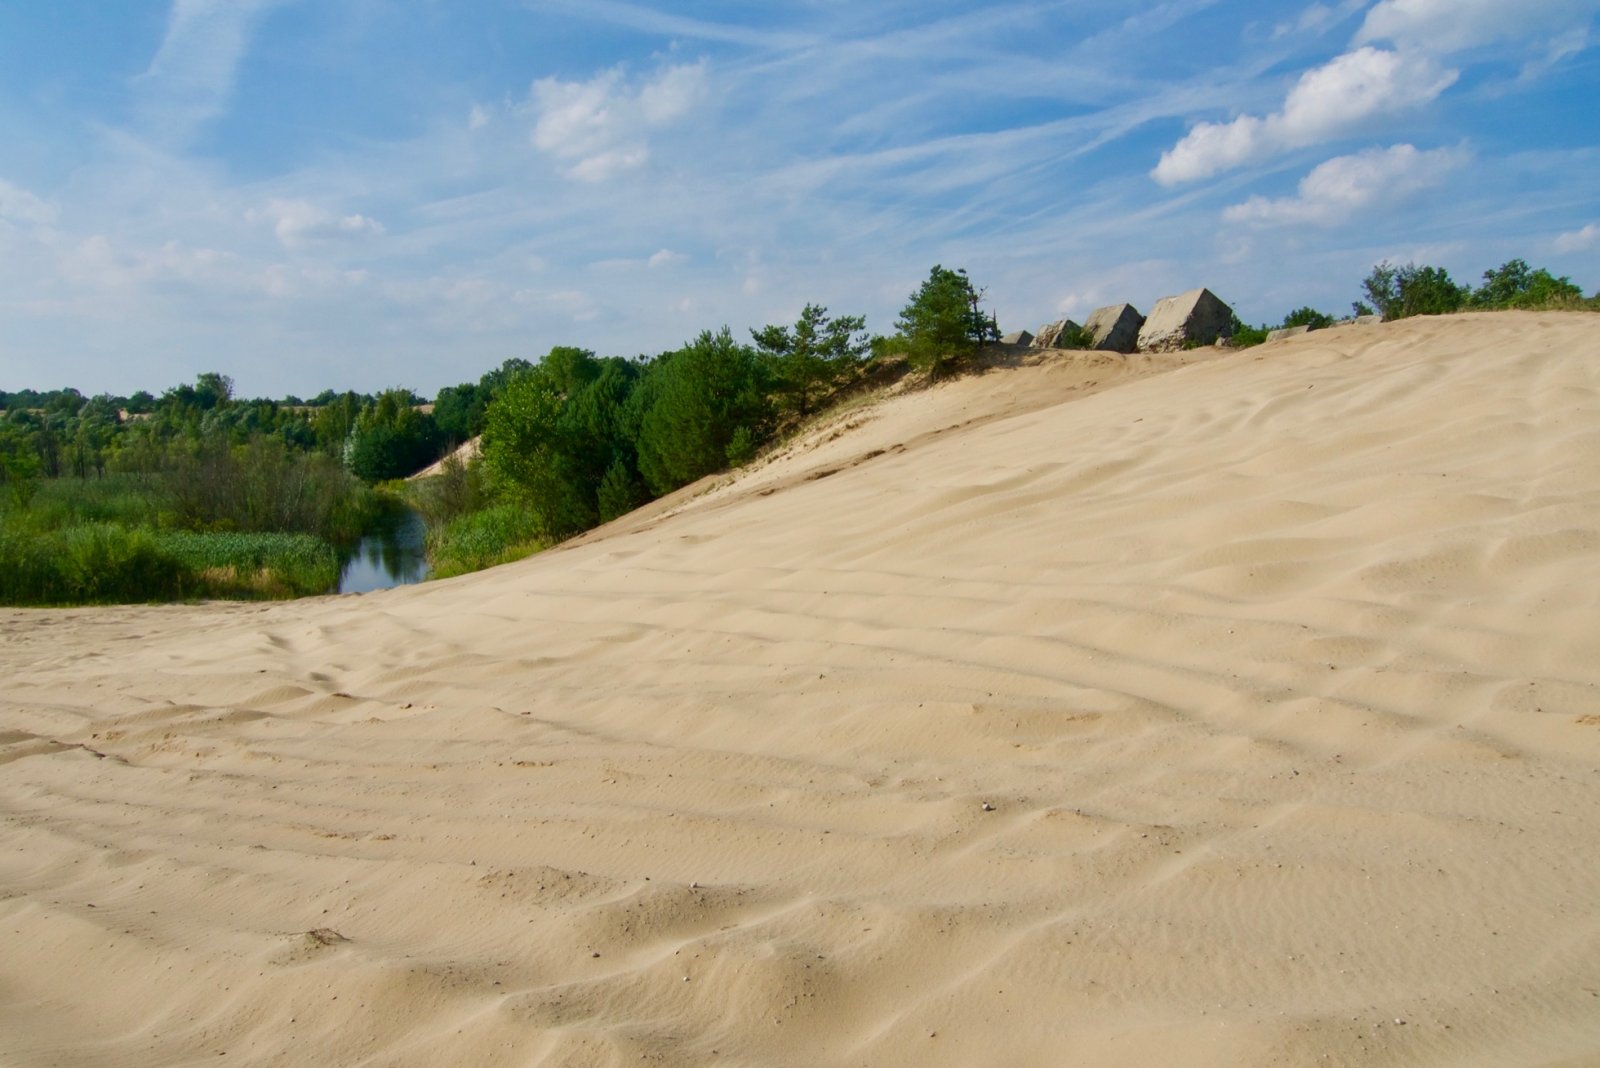 Piesková duna vo Vojenskom obvode Záhorie, prístupná verejnosti. Foto – Soňa Mäkká 